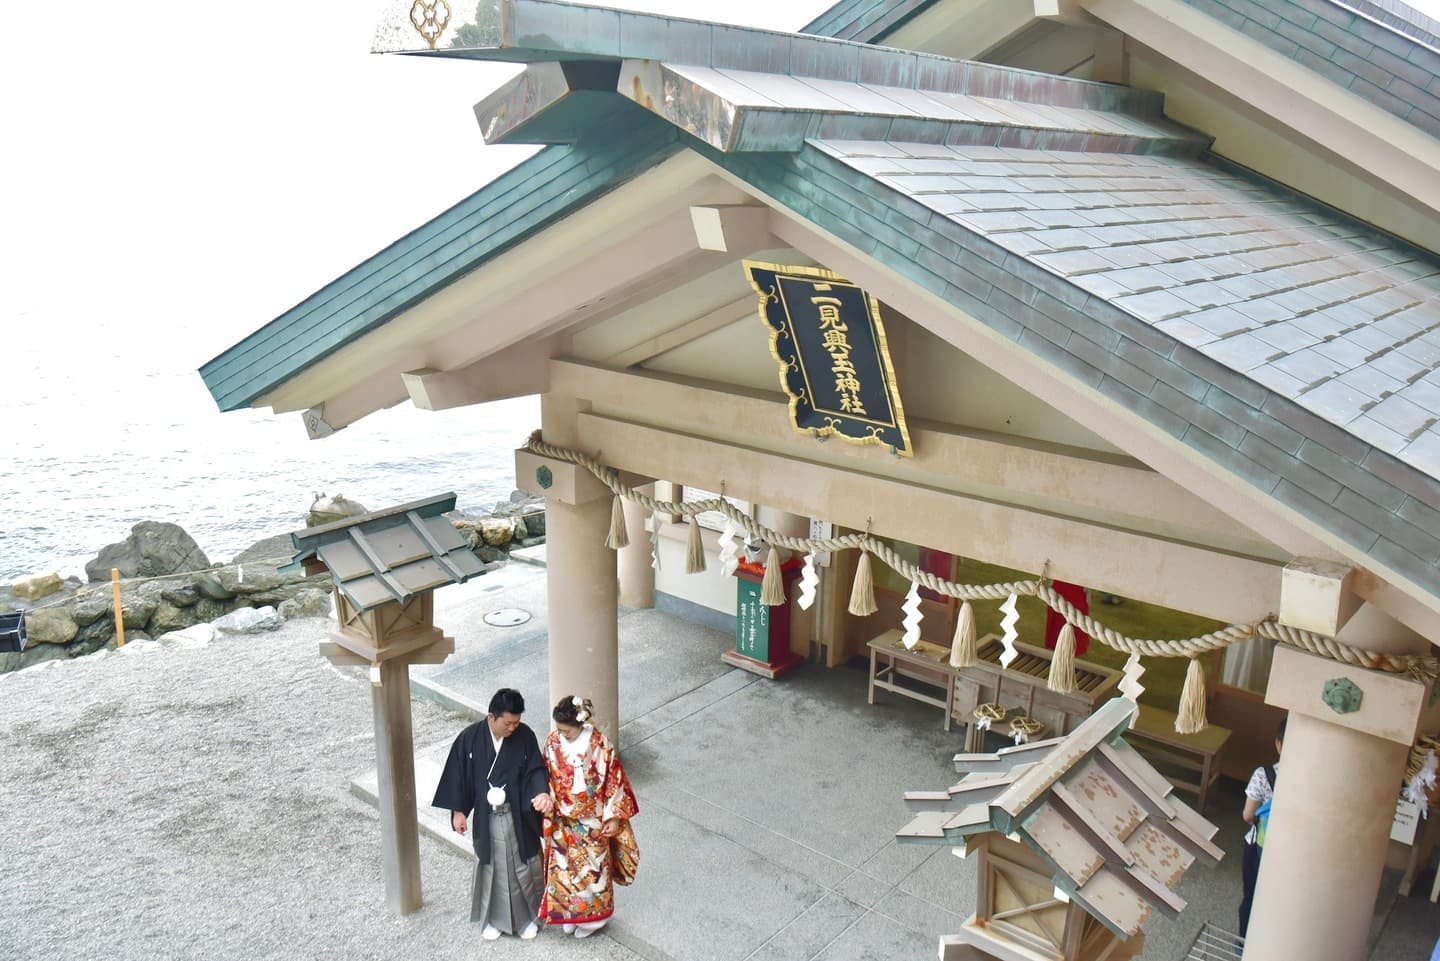 二見興玉神社で結婚式の新郎と花嫁さん